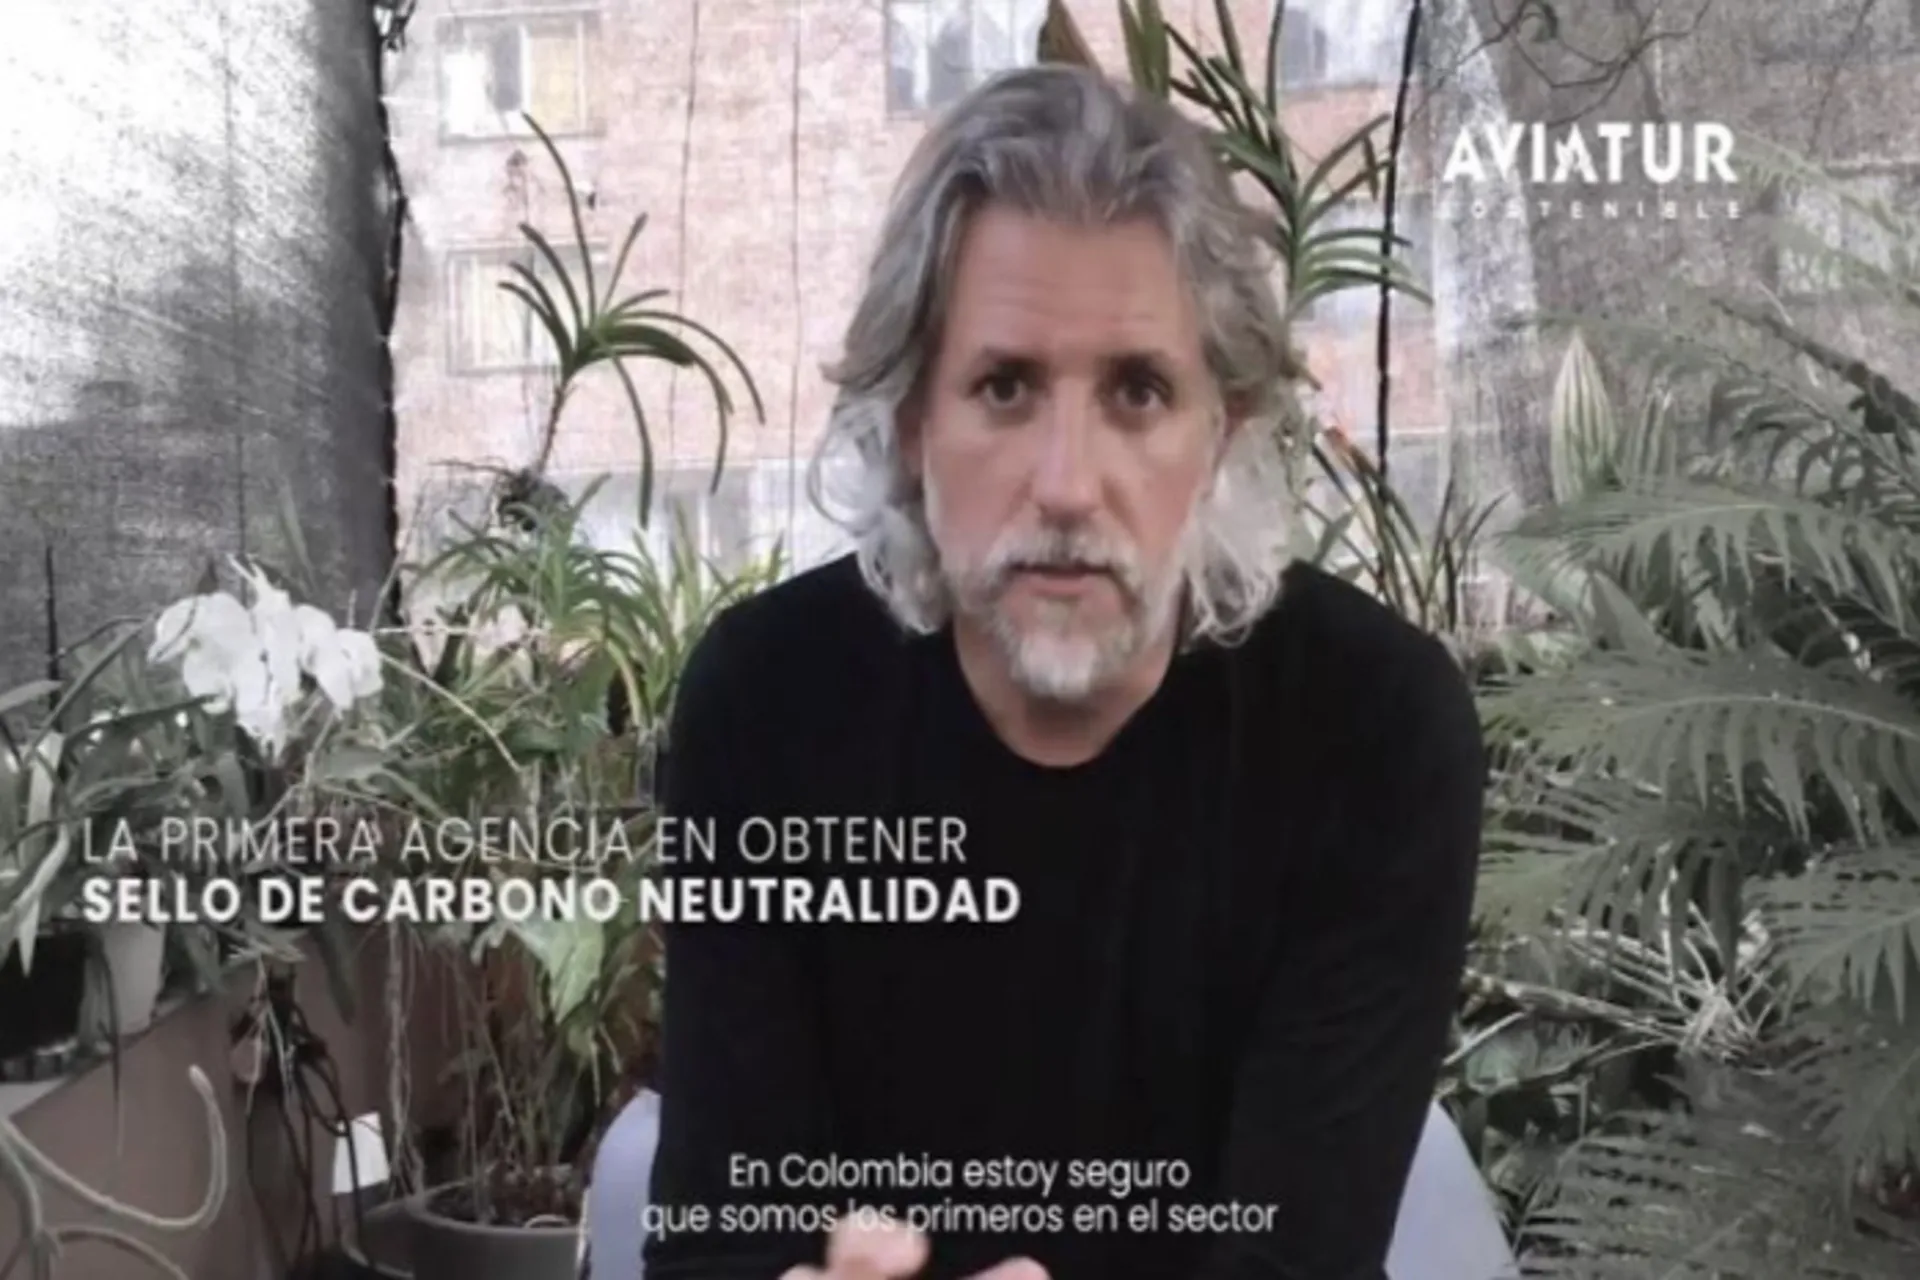 Aviatur es la primera agencia de viajes carbono neutral de Colombia   